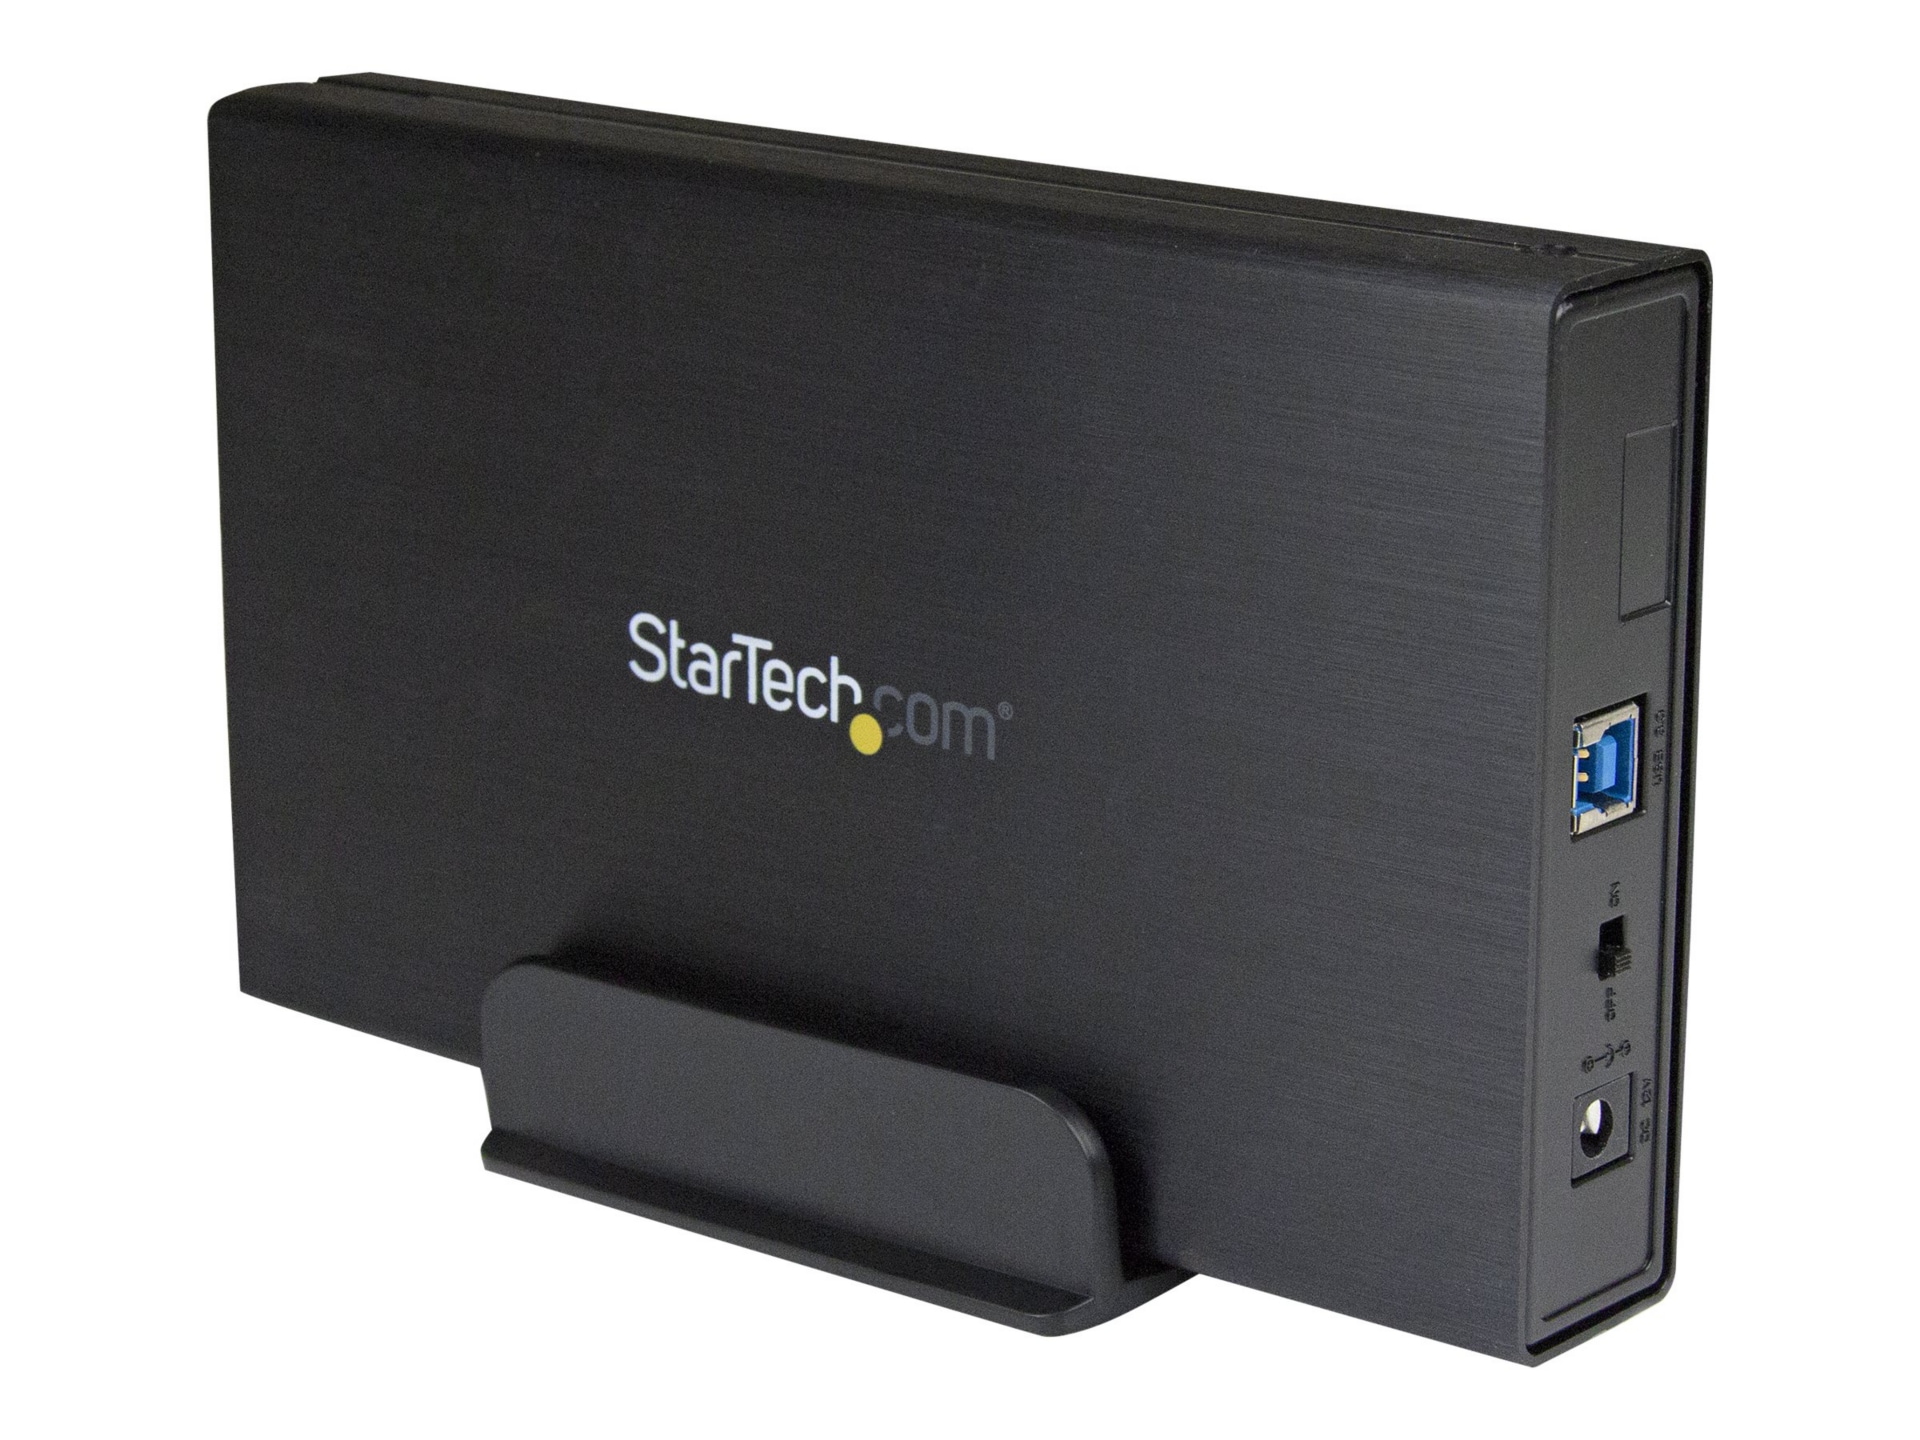 penge godtgørelse Stille og rolig StarTech.com 3.5in USB 3.0 SATA III Hard Enclosure with UASP for SATA 6Gbps  - S3510BMU33 - Storage Mounts & Enclosures - CDW.com